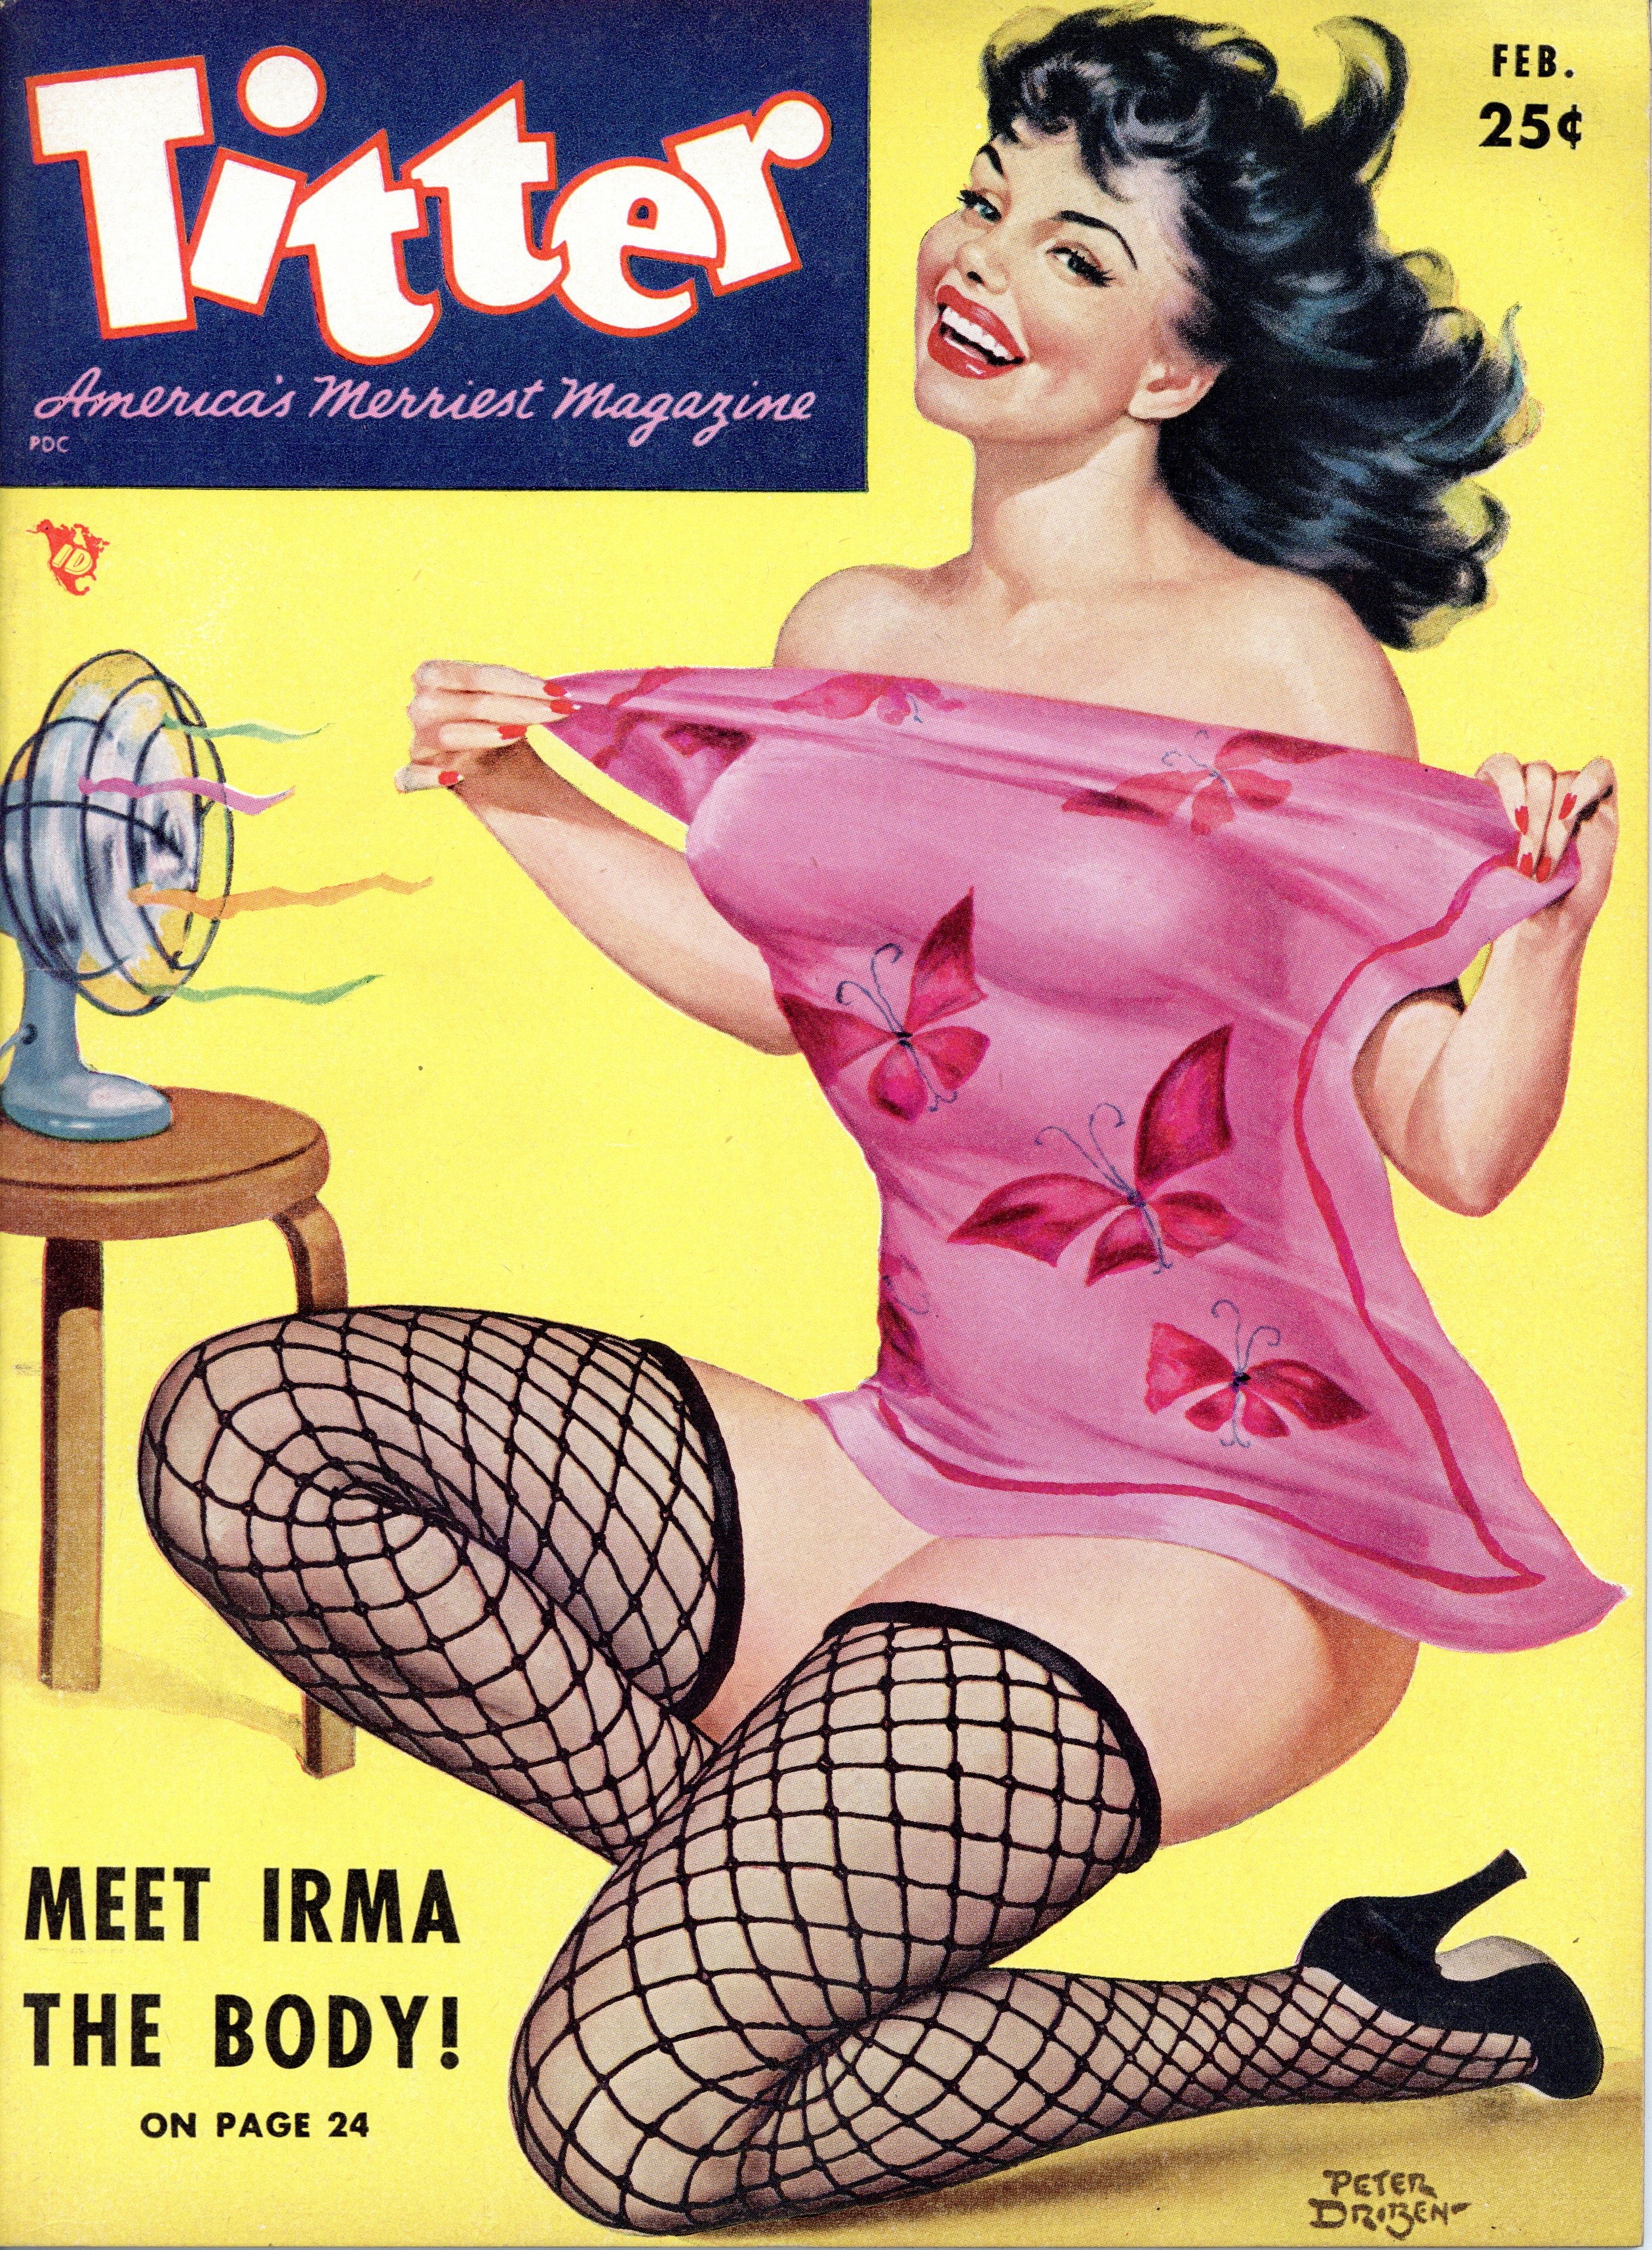 Titter February 1953